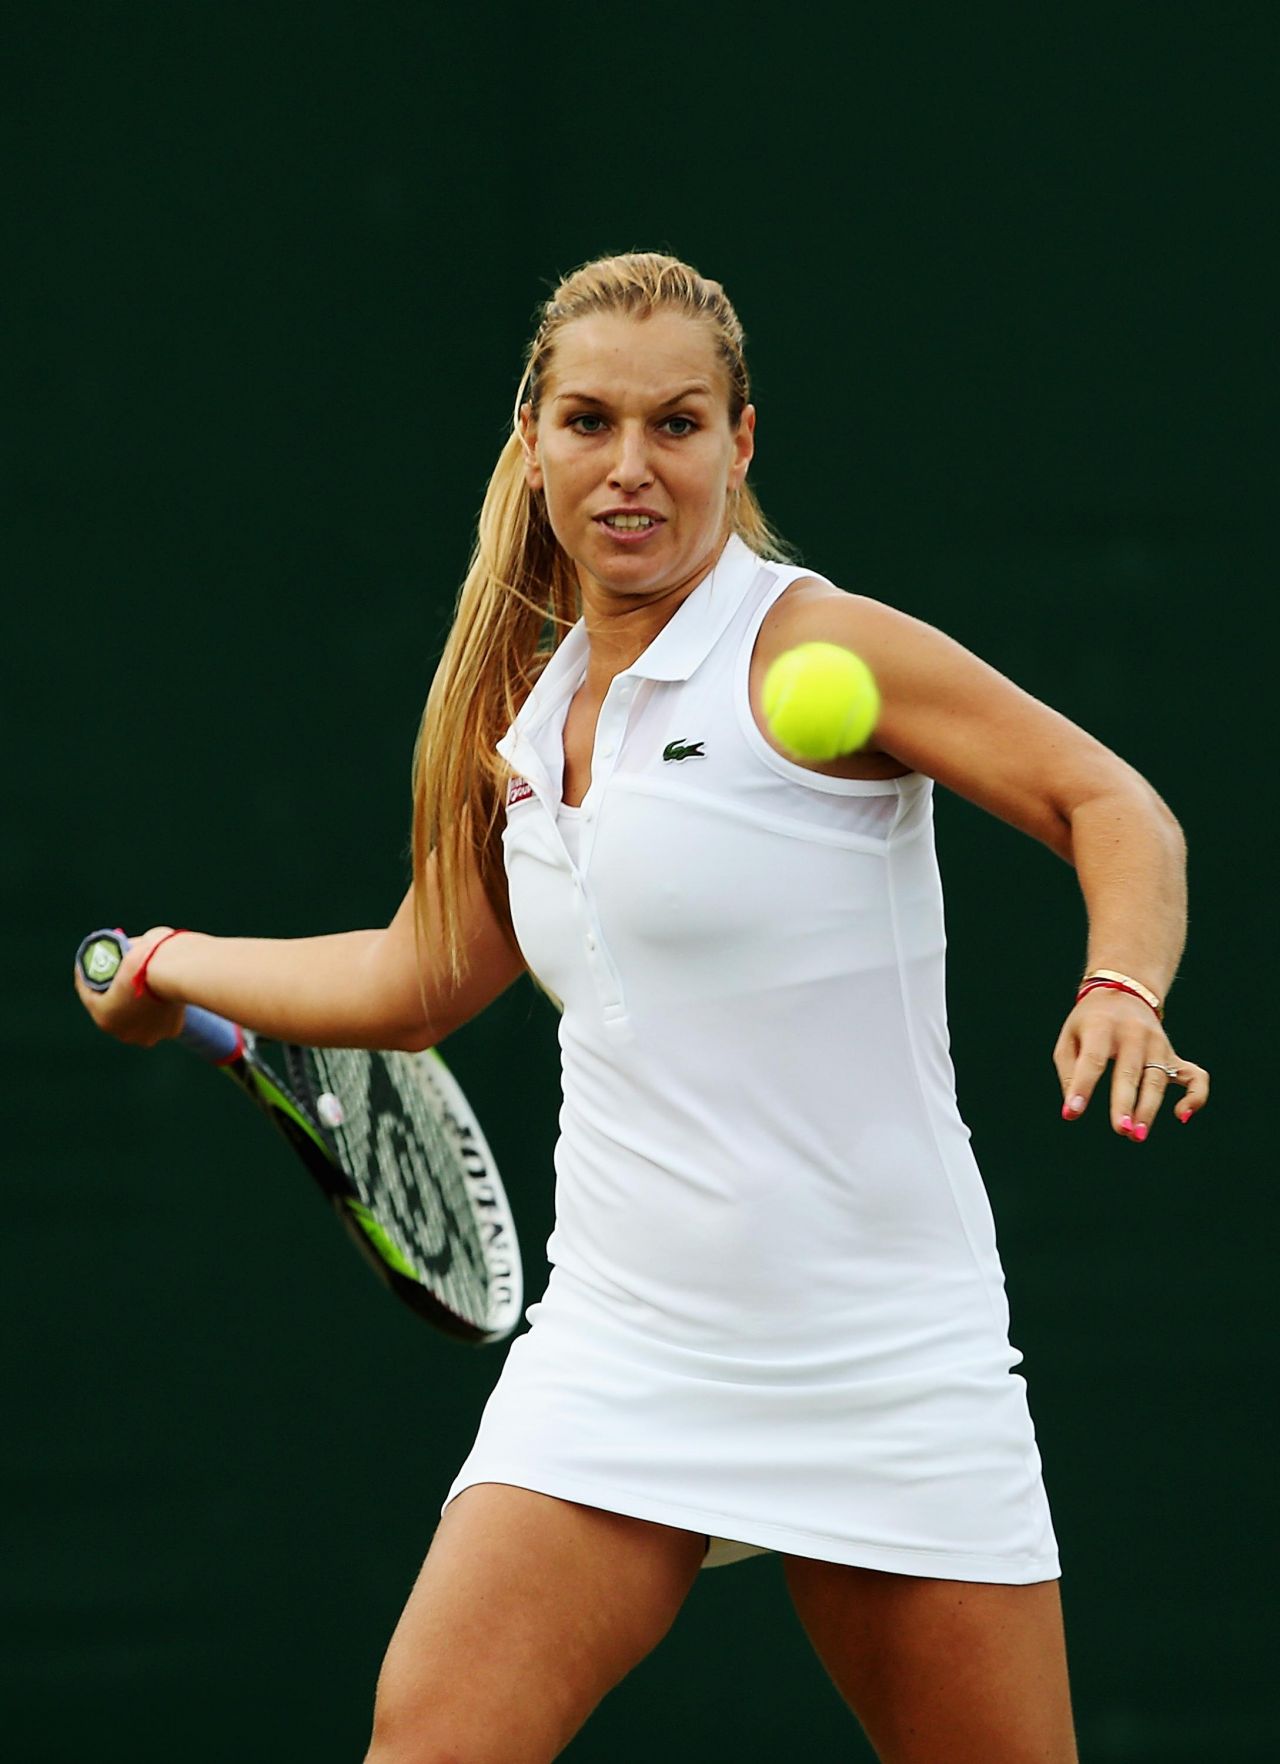 Dominika Cibulkova – Wimbledon Tennis Championships 2014 – 2nd Round1280 x 1764